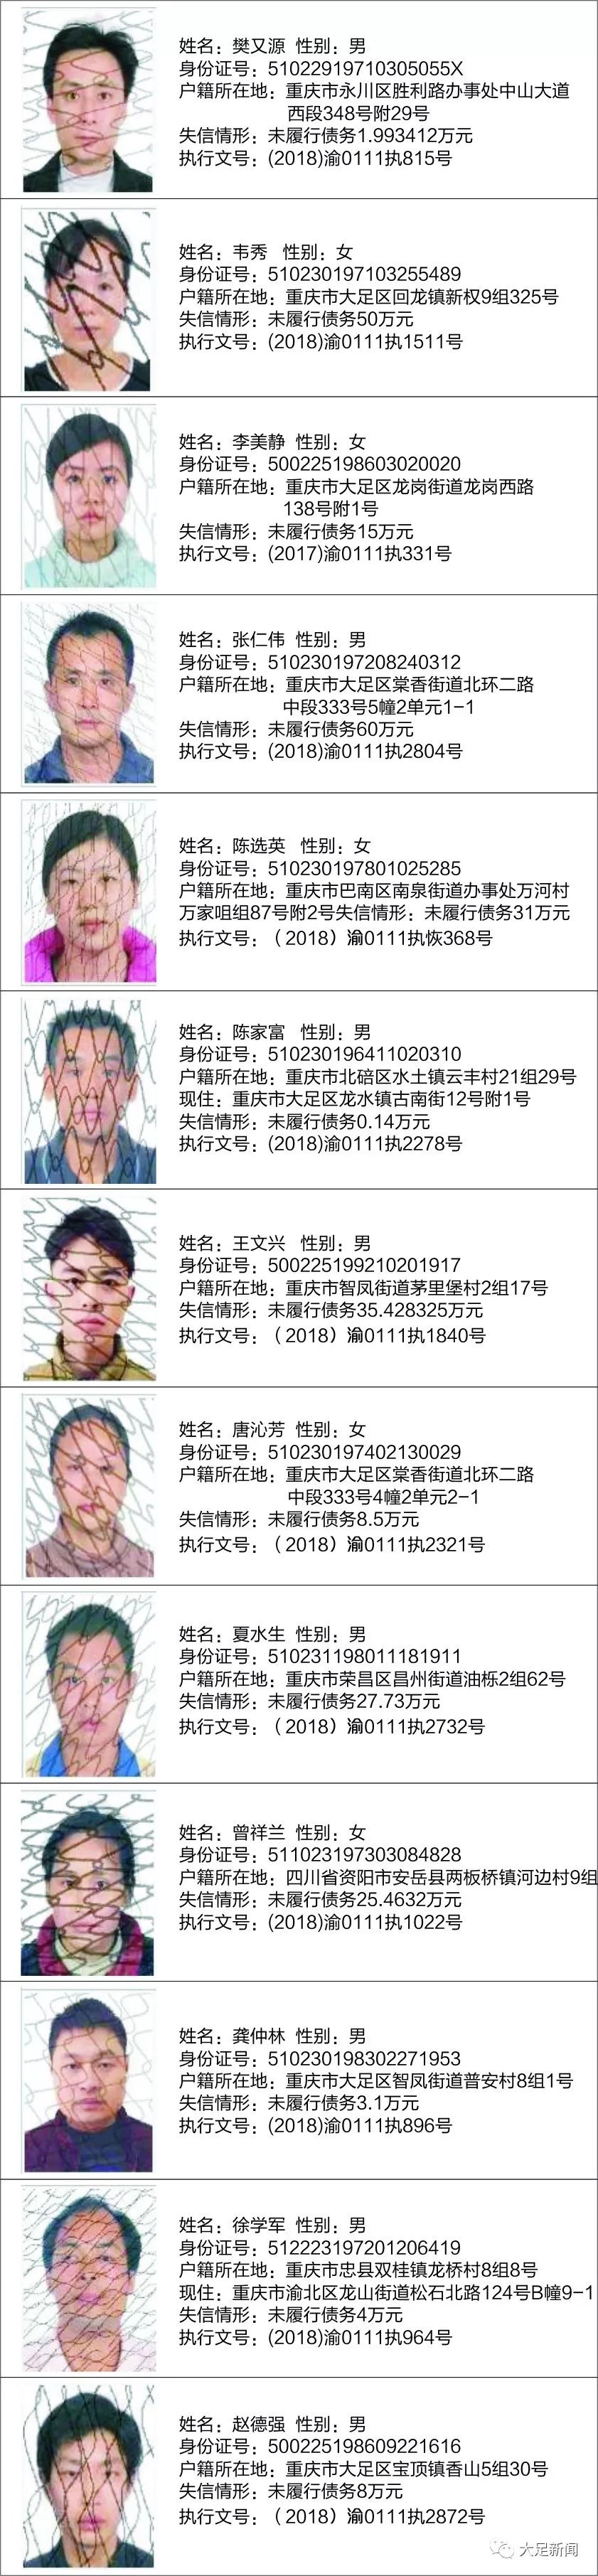 重庆市大足区人民法院失信被执行人曝光名单 (第八期)